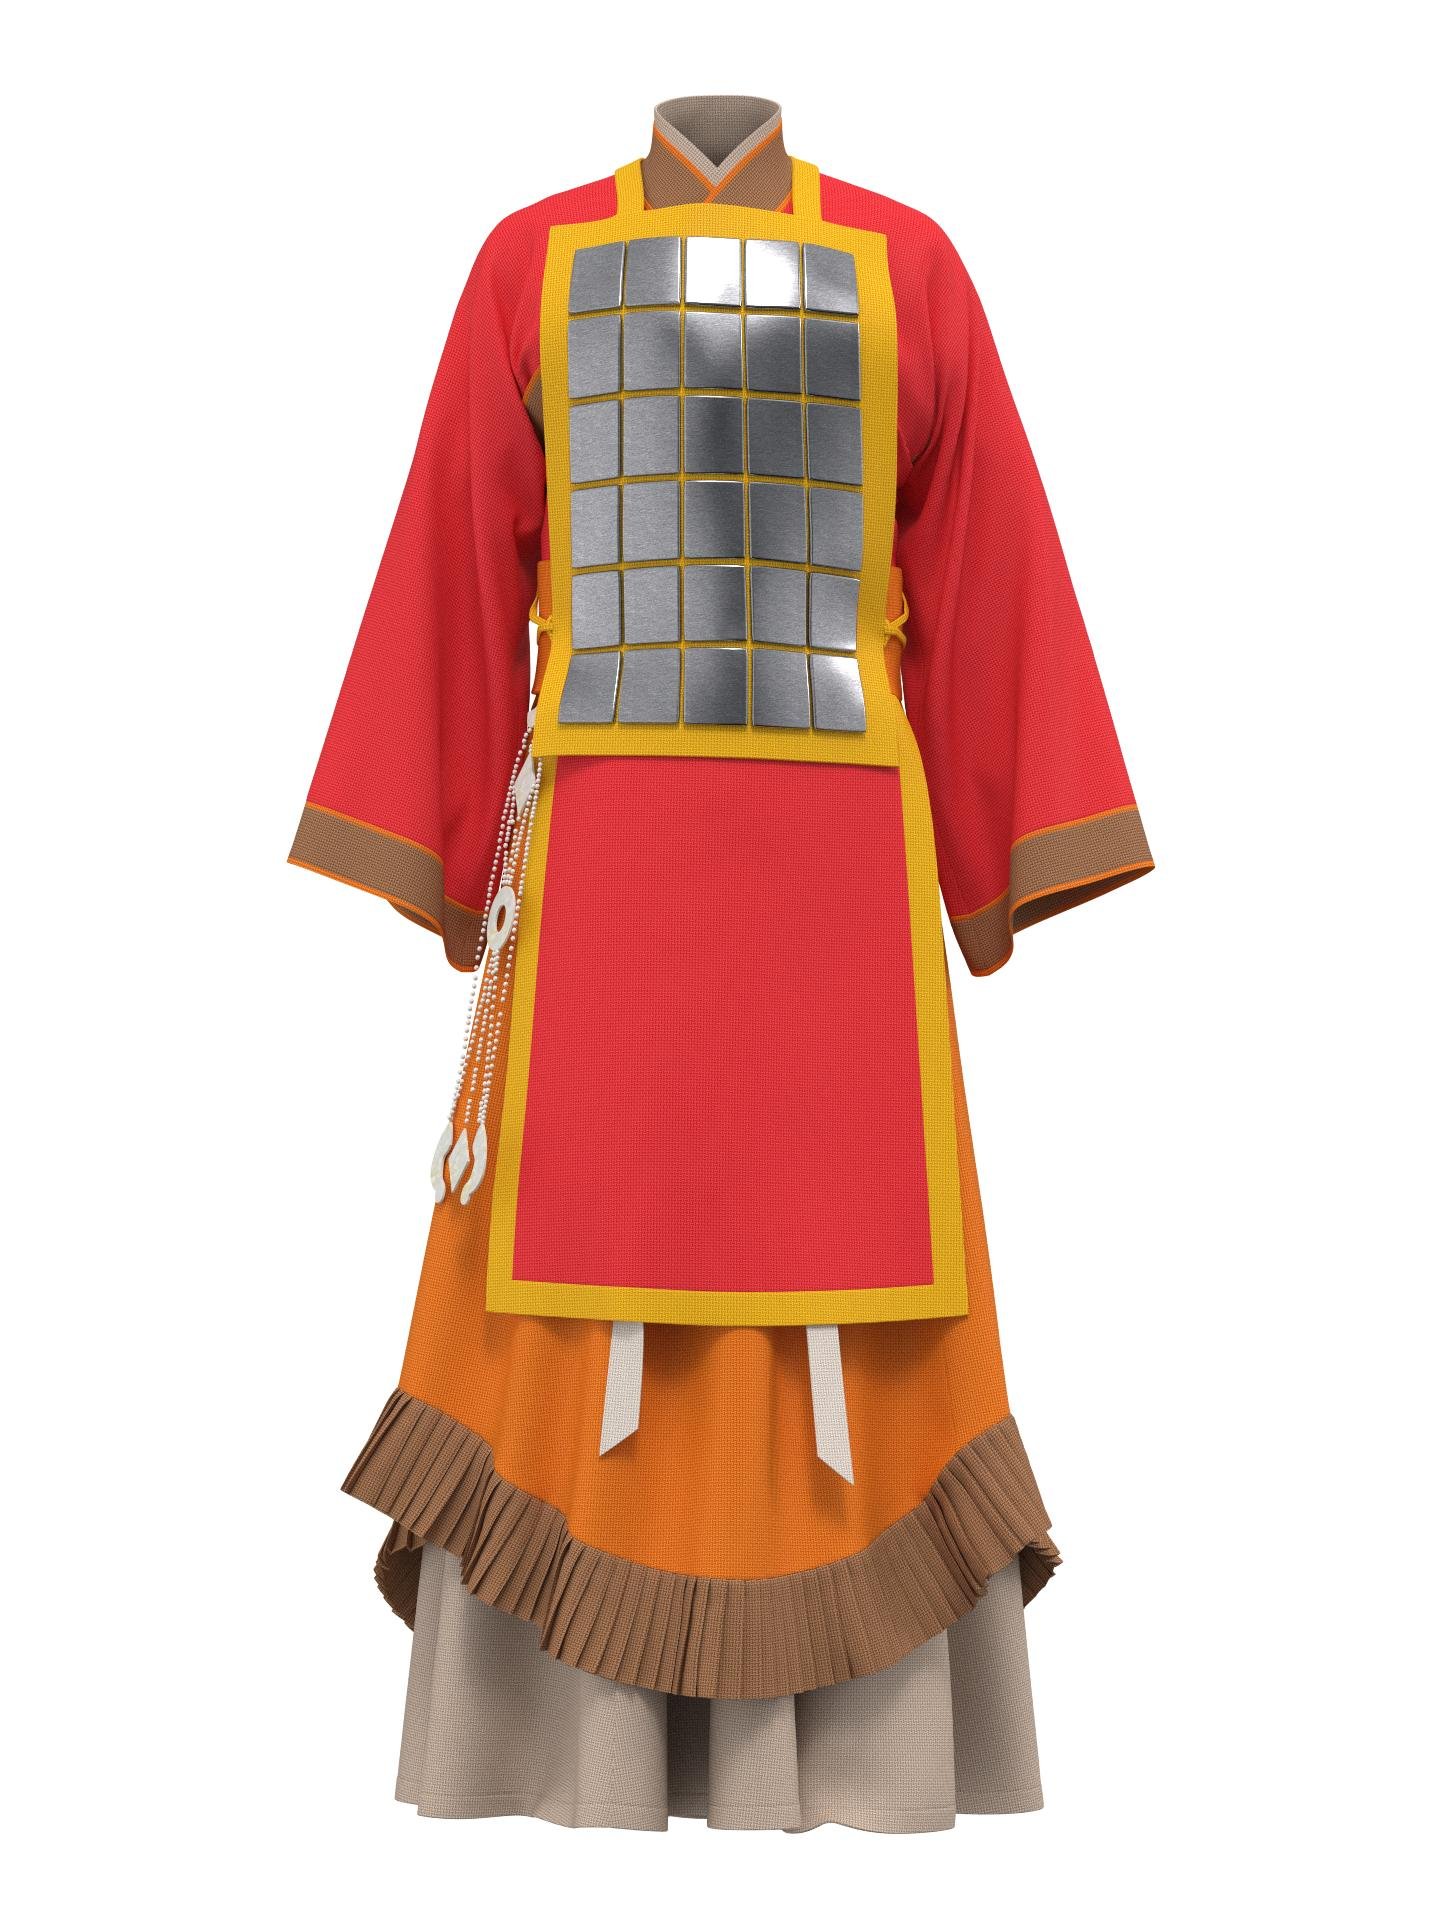 Western Zhou Dynasty warrior uniform by X²H